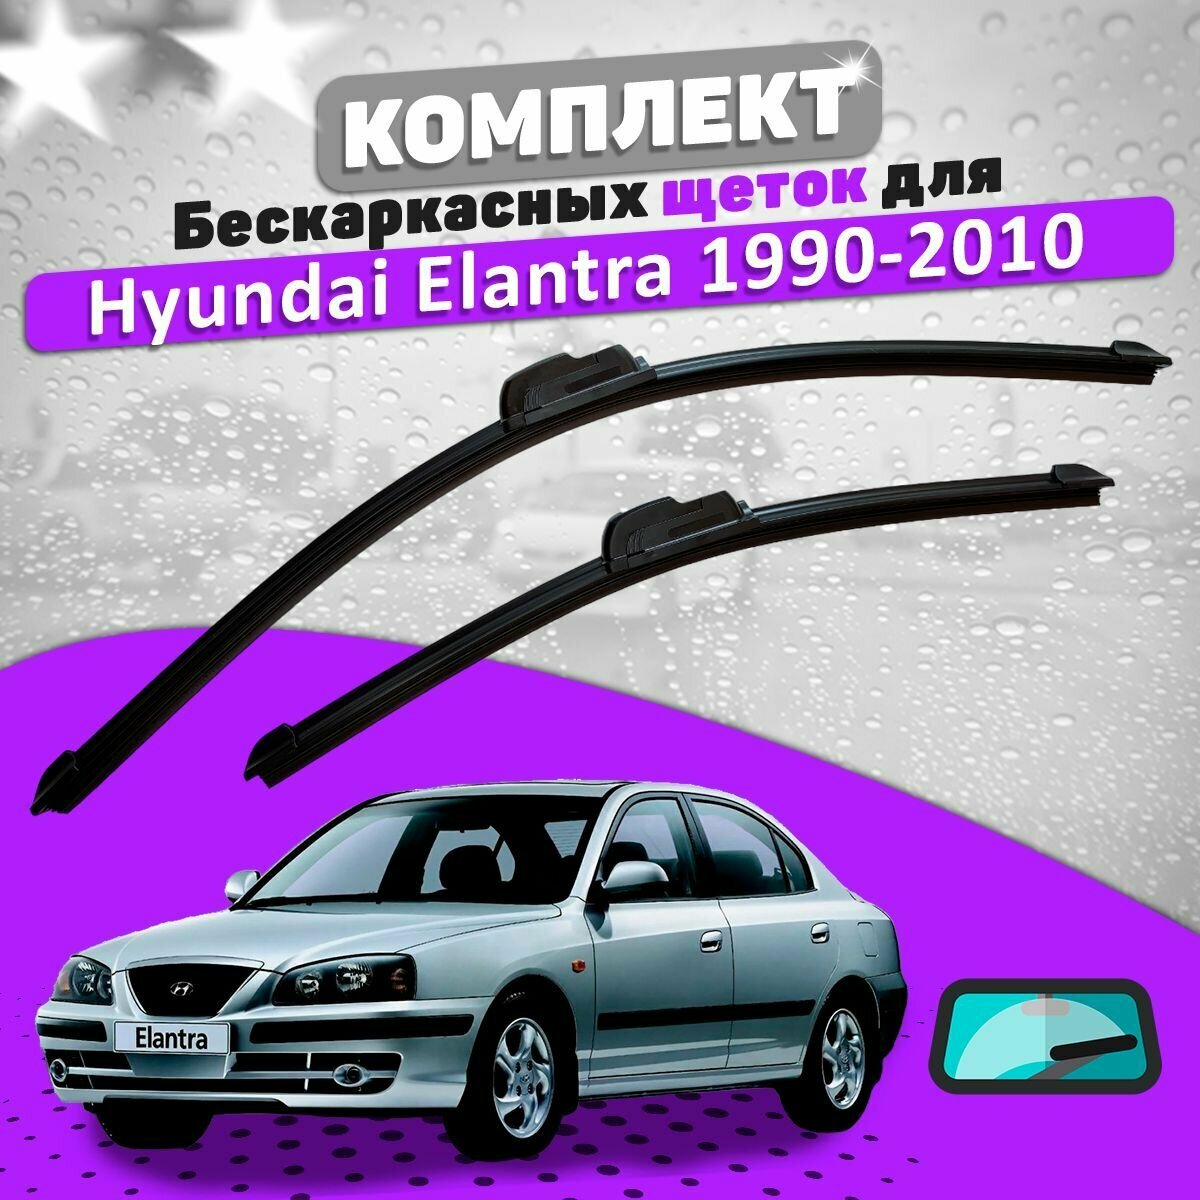 Комплект щеток стеклоочистителя LAVR для Hyundai Elantra 1990-2010 (500 и 450 мм) / Дворники Хундай Елантра